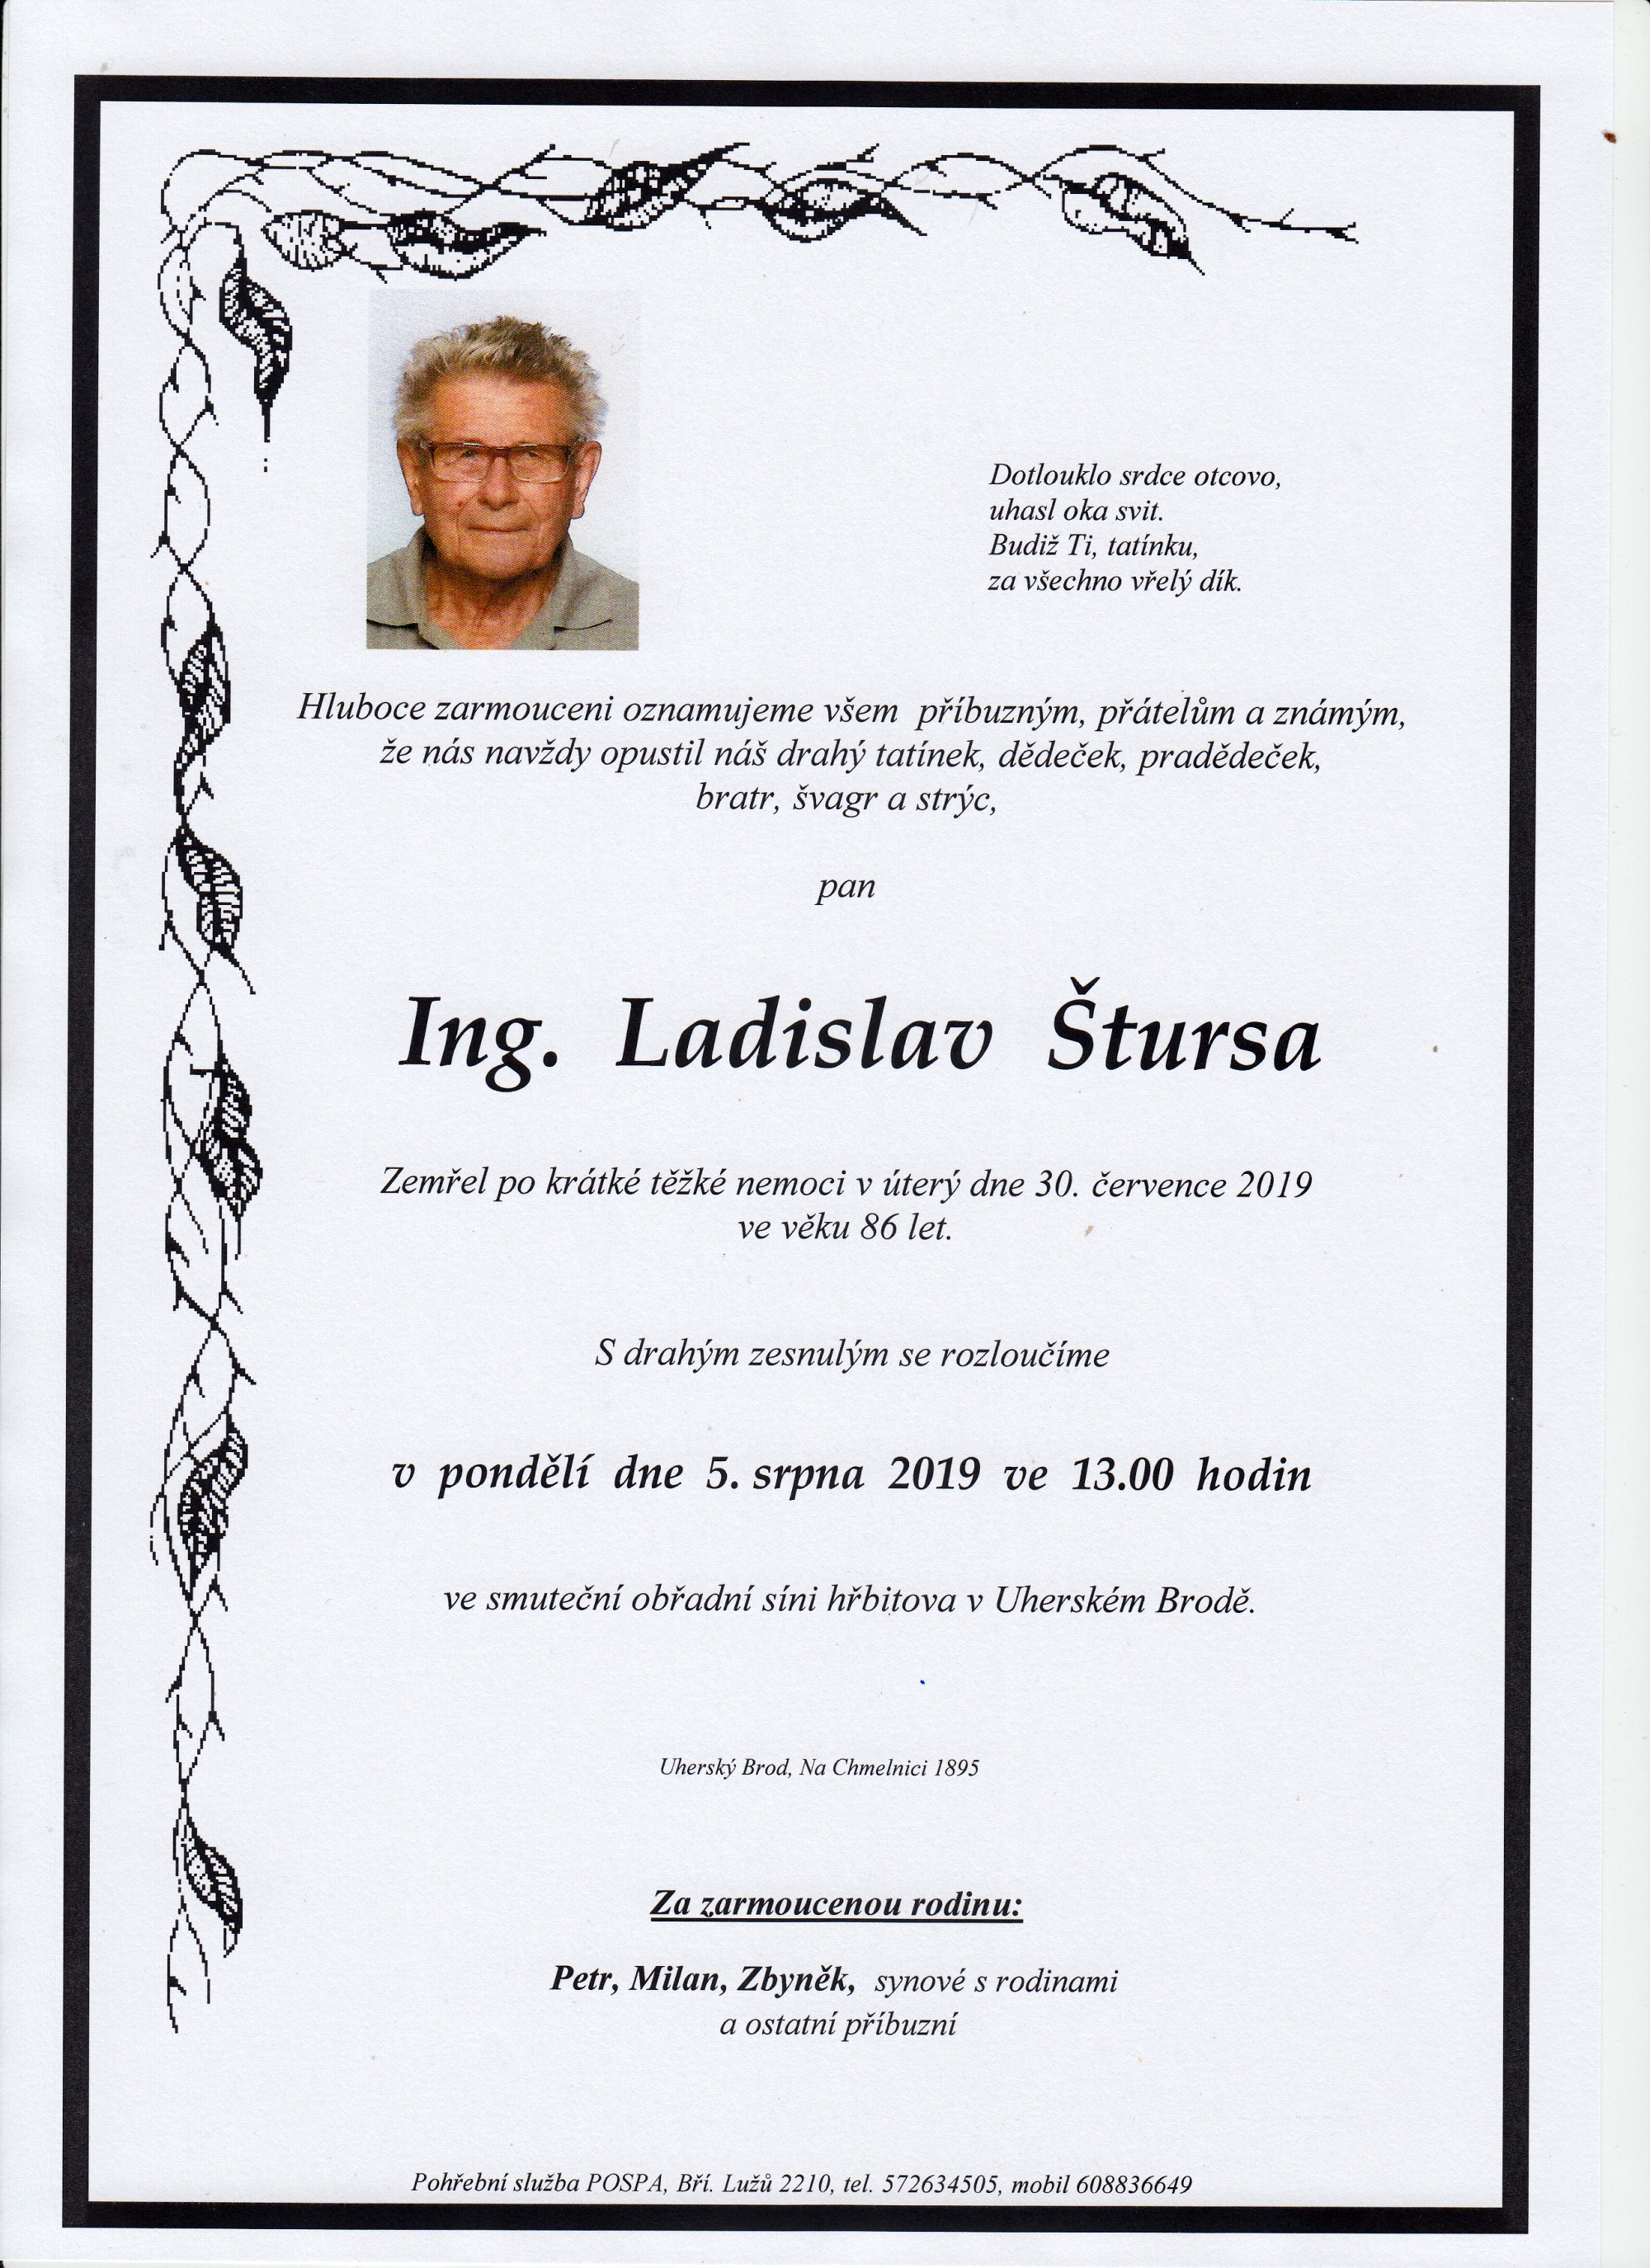 Ing. Ladislav Štursa